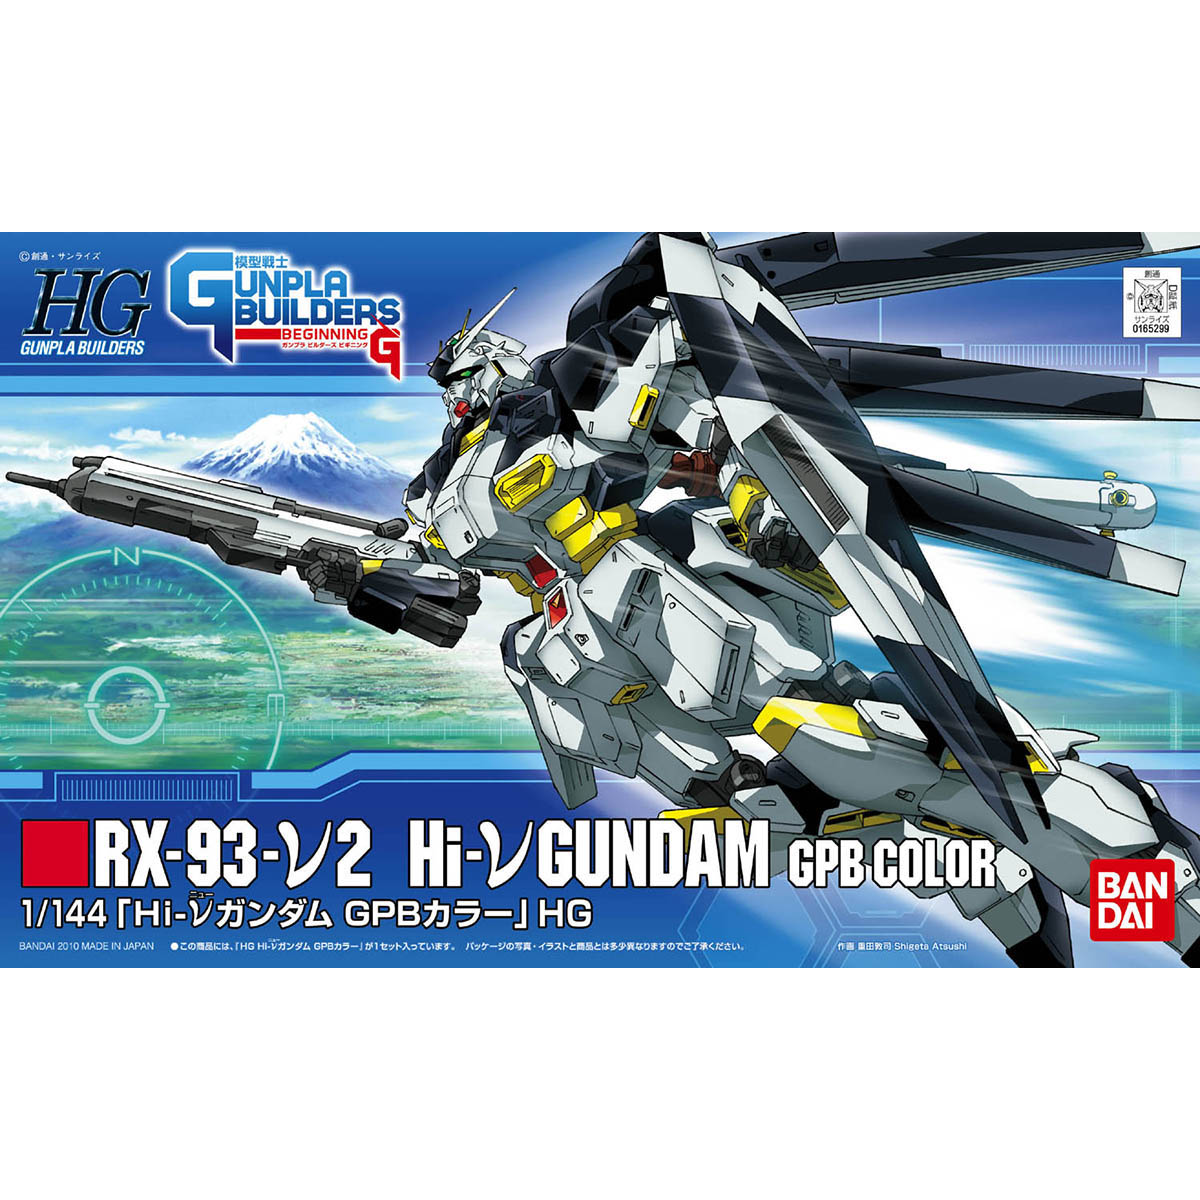 HG 1/144 RX-93-ν2 Hi-νガンダム GPBカラー [Hi-ν Gundam GPB color]